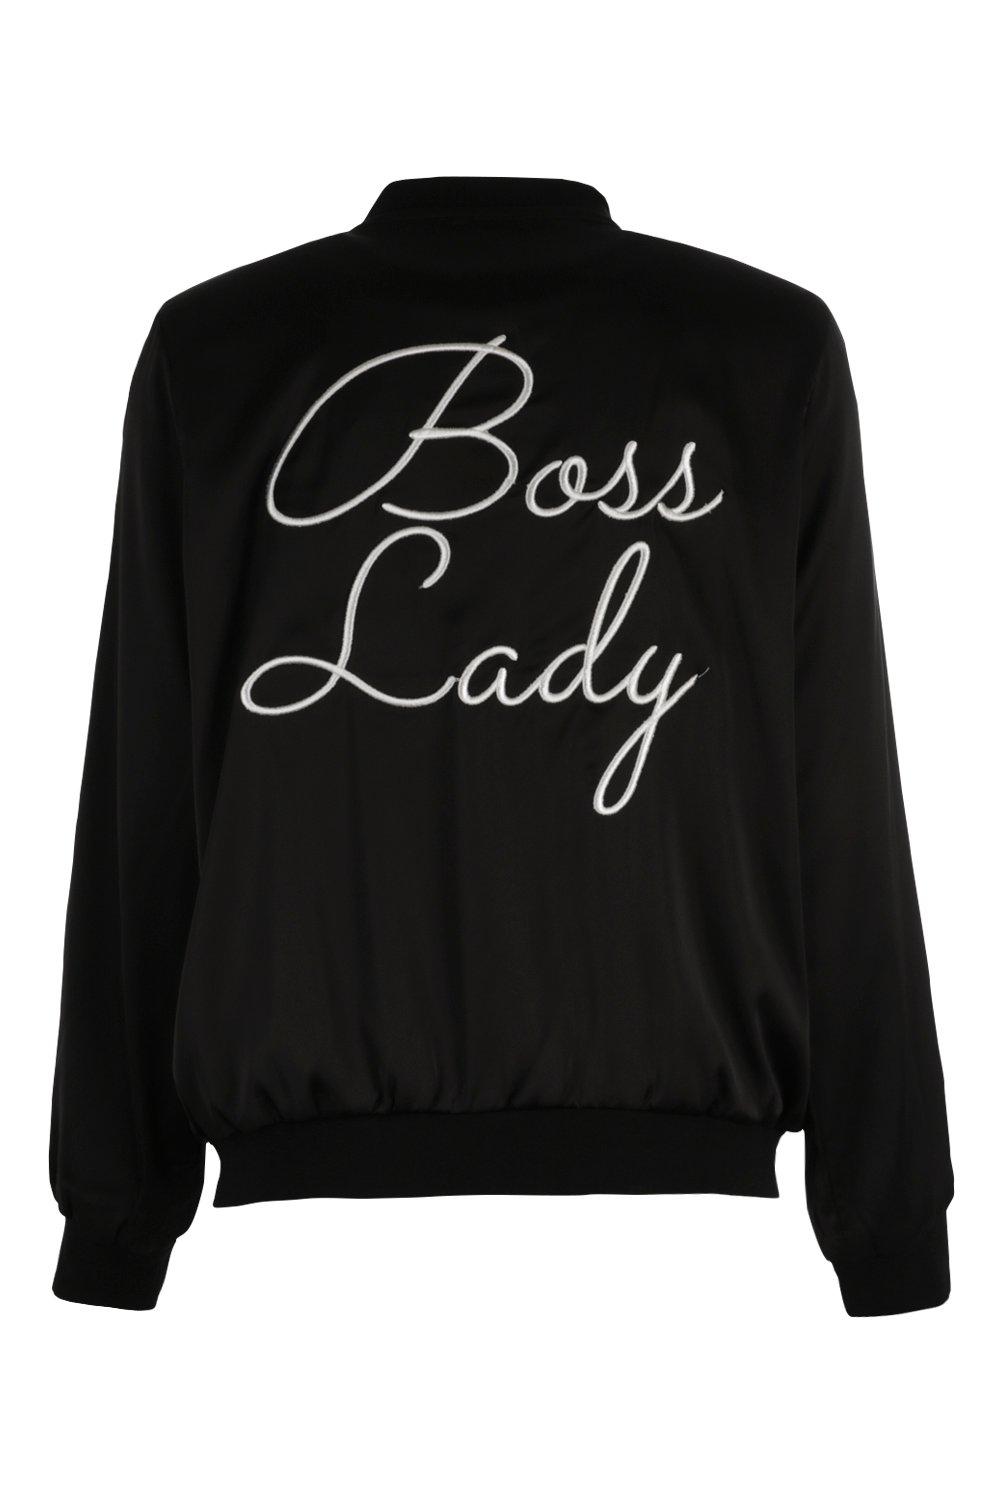 boss lady jacket